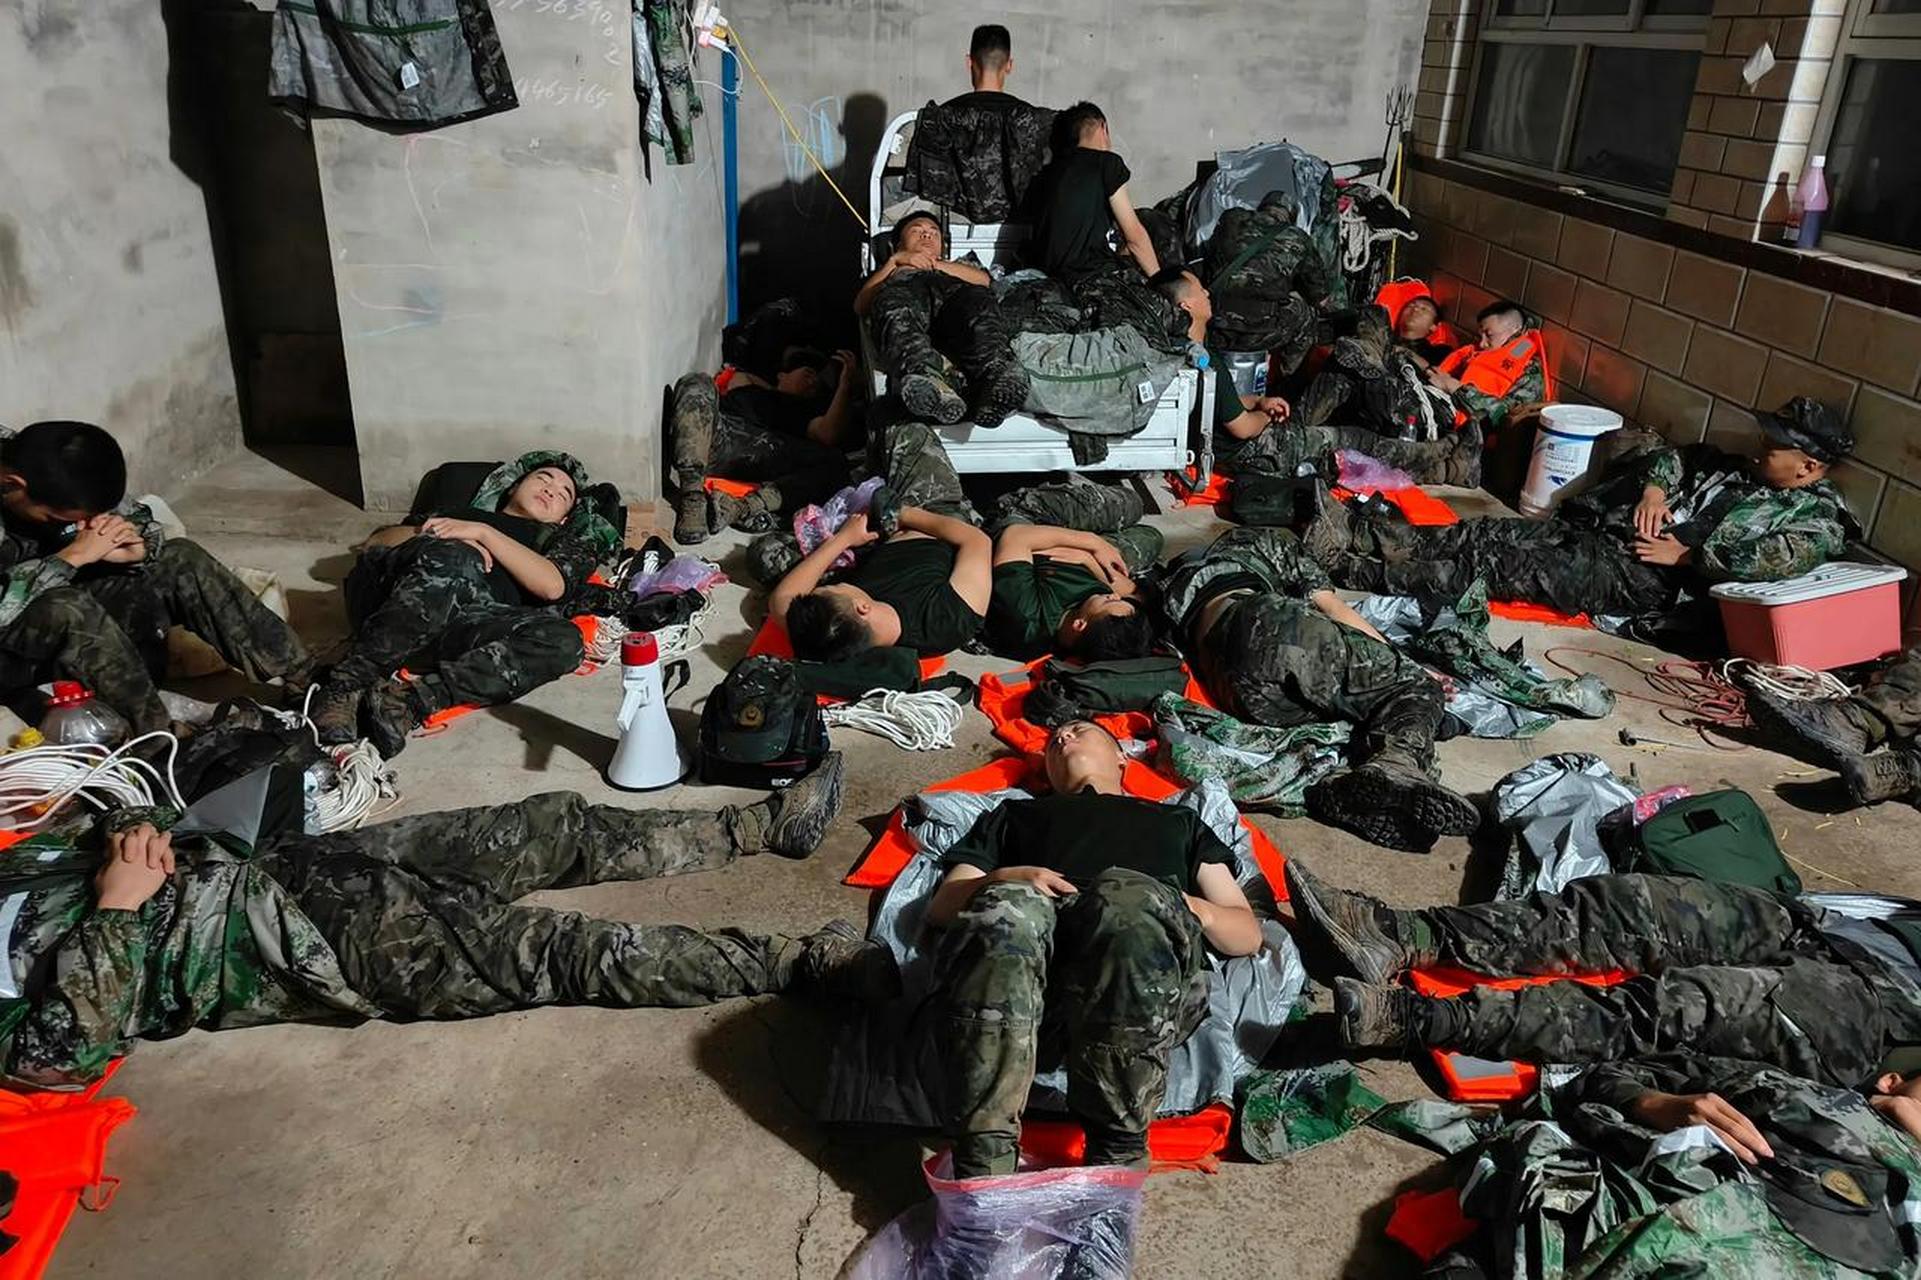 河北廊坊抗洪第一线的一张感人又心酸的照片,10多位疲惫抗洪军人躺在